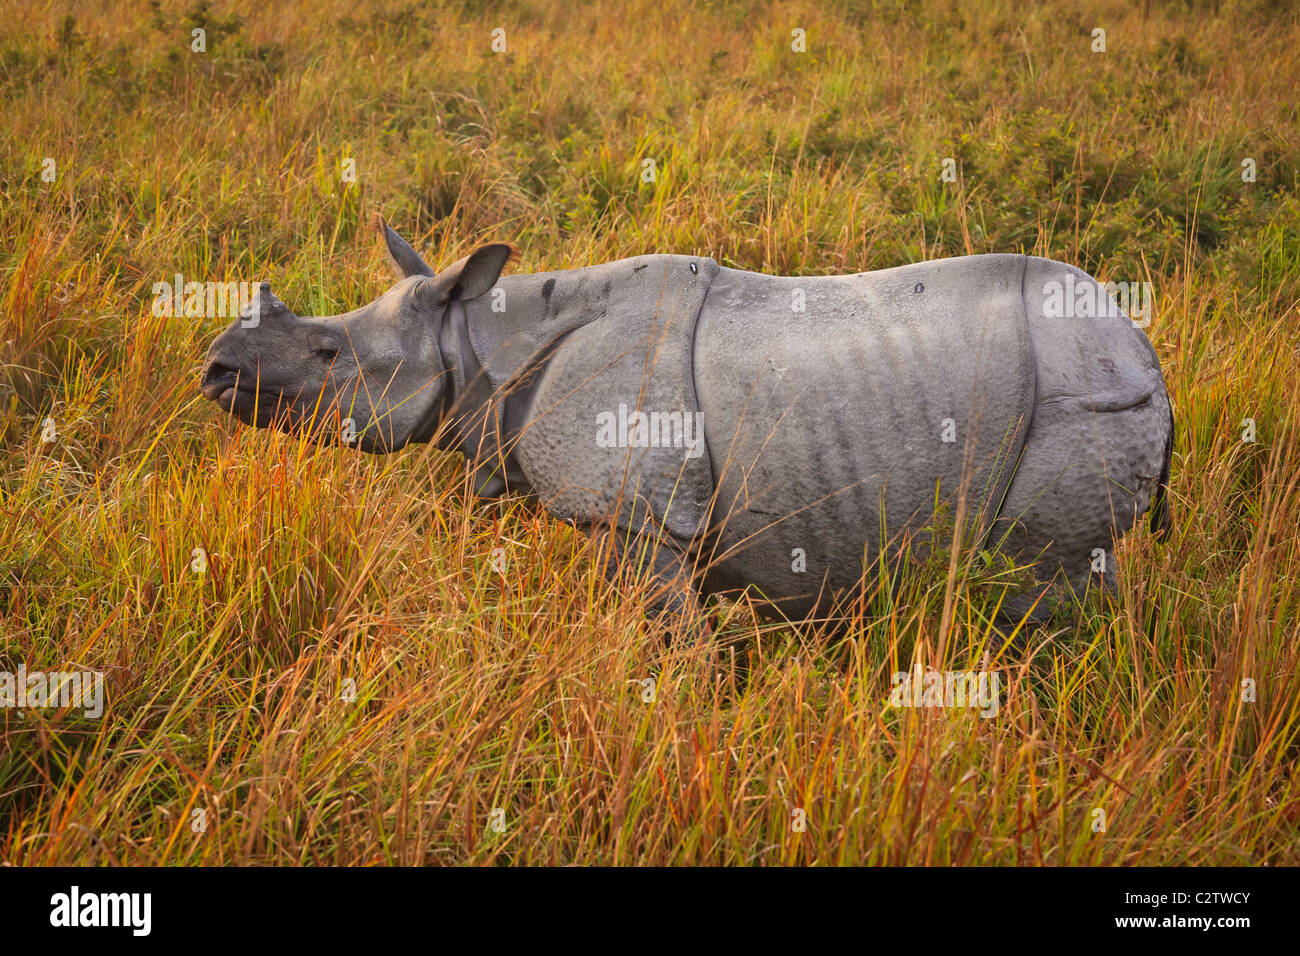 Le rhinocéros indien (Rhinoceros unicornis) au parc national de Kaziranga, Assam, Inde Banque D'Images